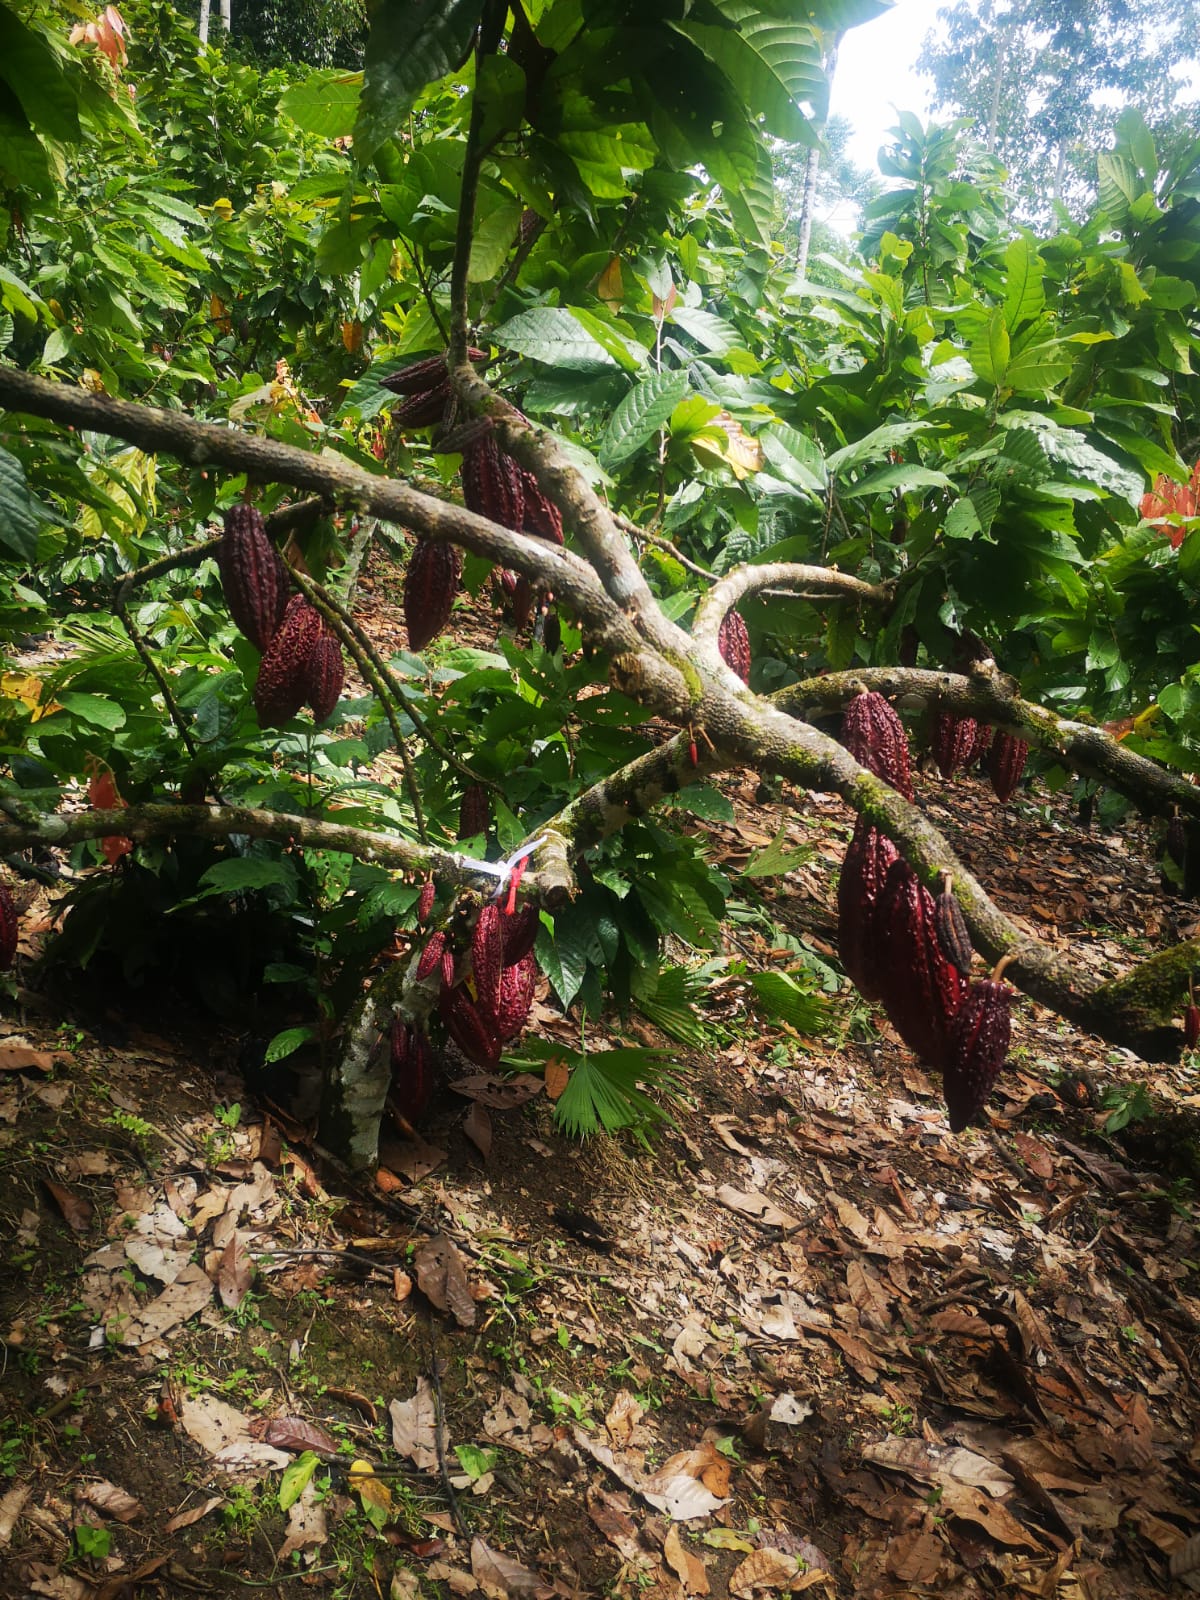 Cacao clon CCN-51. Photo: C.S. Castañeda-Serrano